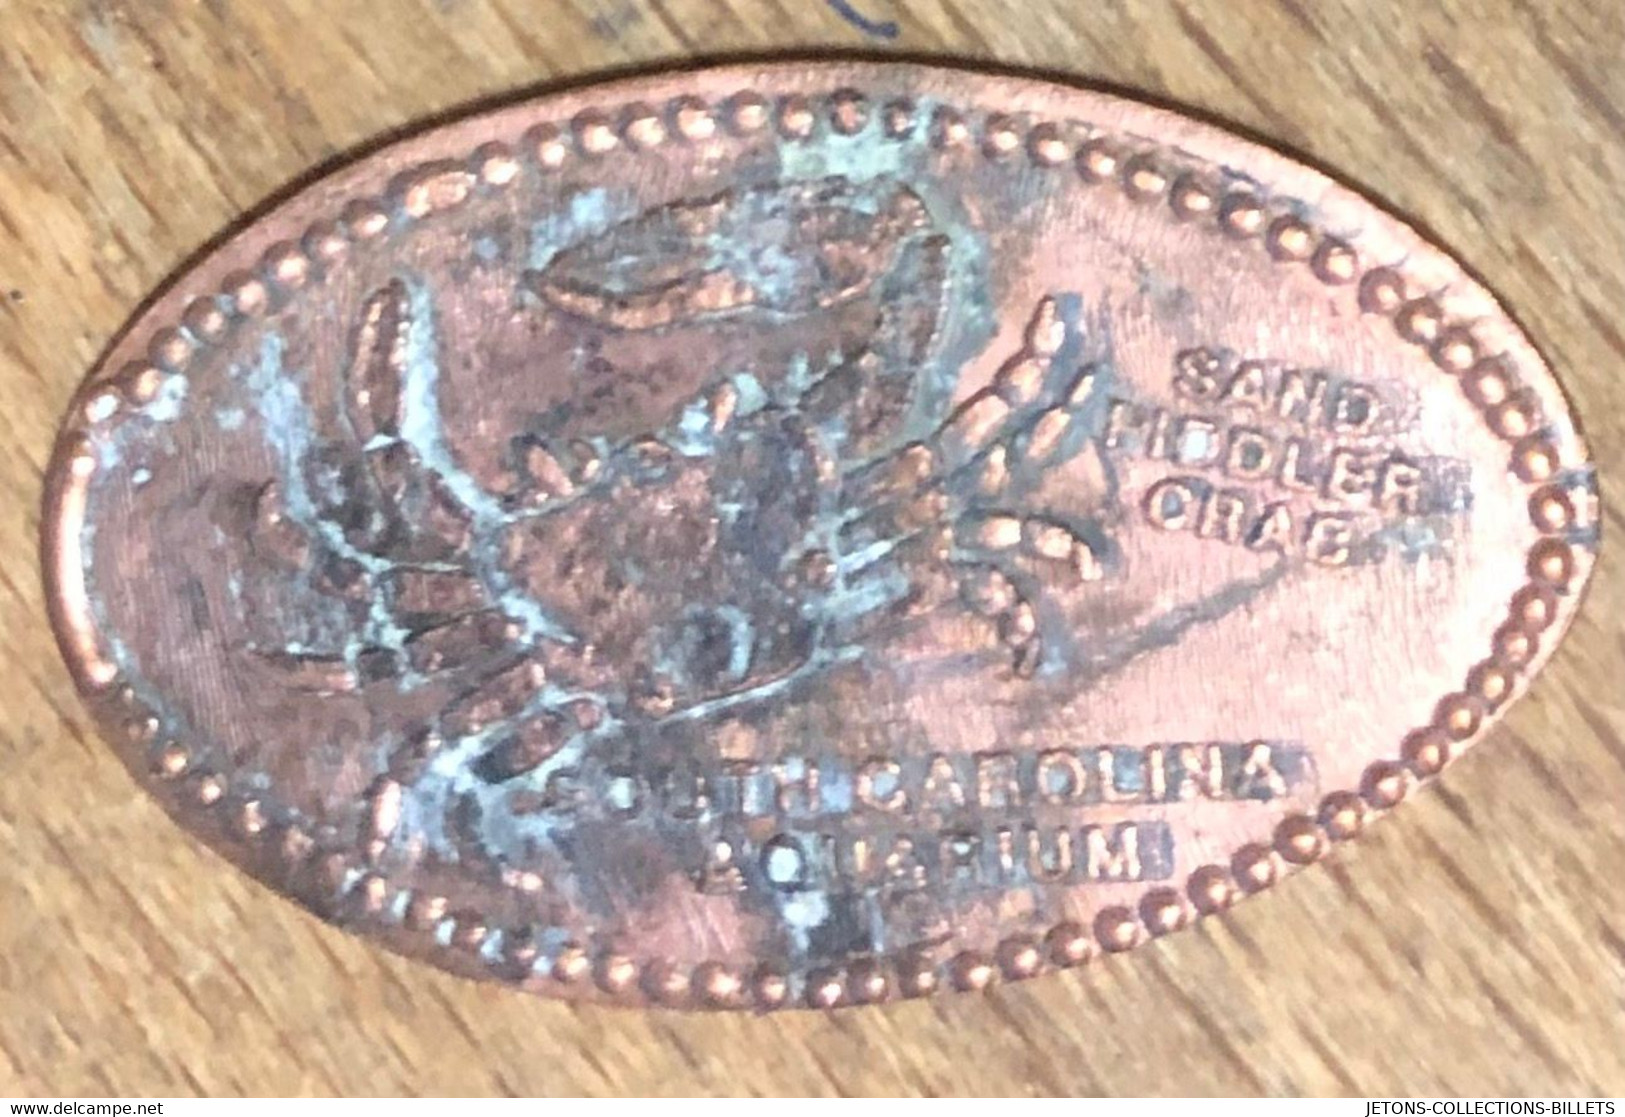 ÉTATS-UNIS USA SOUTH CAROLINA AQUARIUMS CRAS PIÈCE ÉCRASÉE PENNY ELONGATED COIN MEDAILLE TOURISTIQUE MEDALS TOKENS - Pièces écrasées (Elongated Coins)